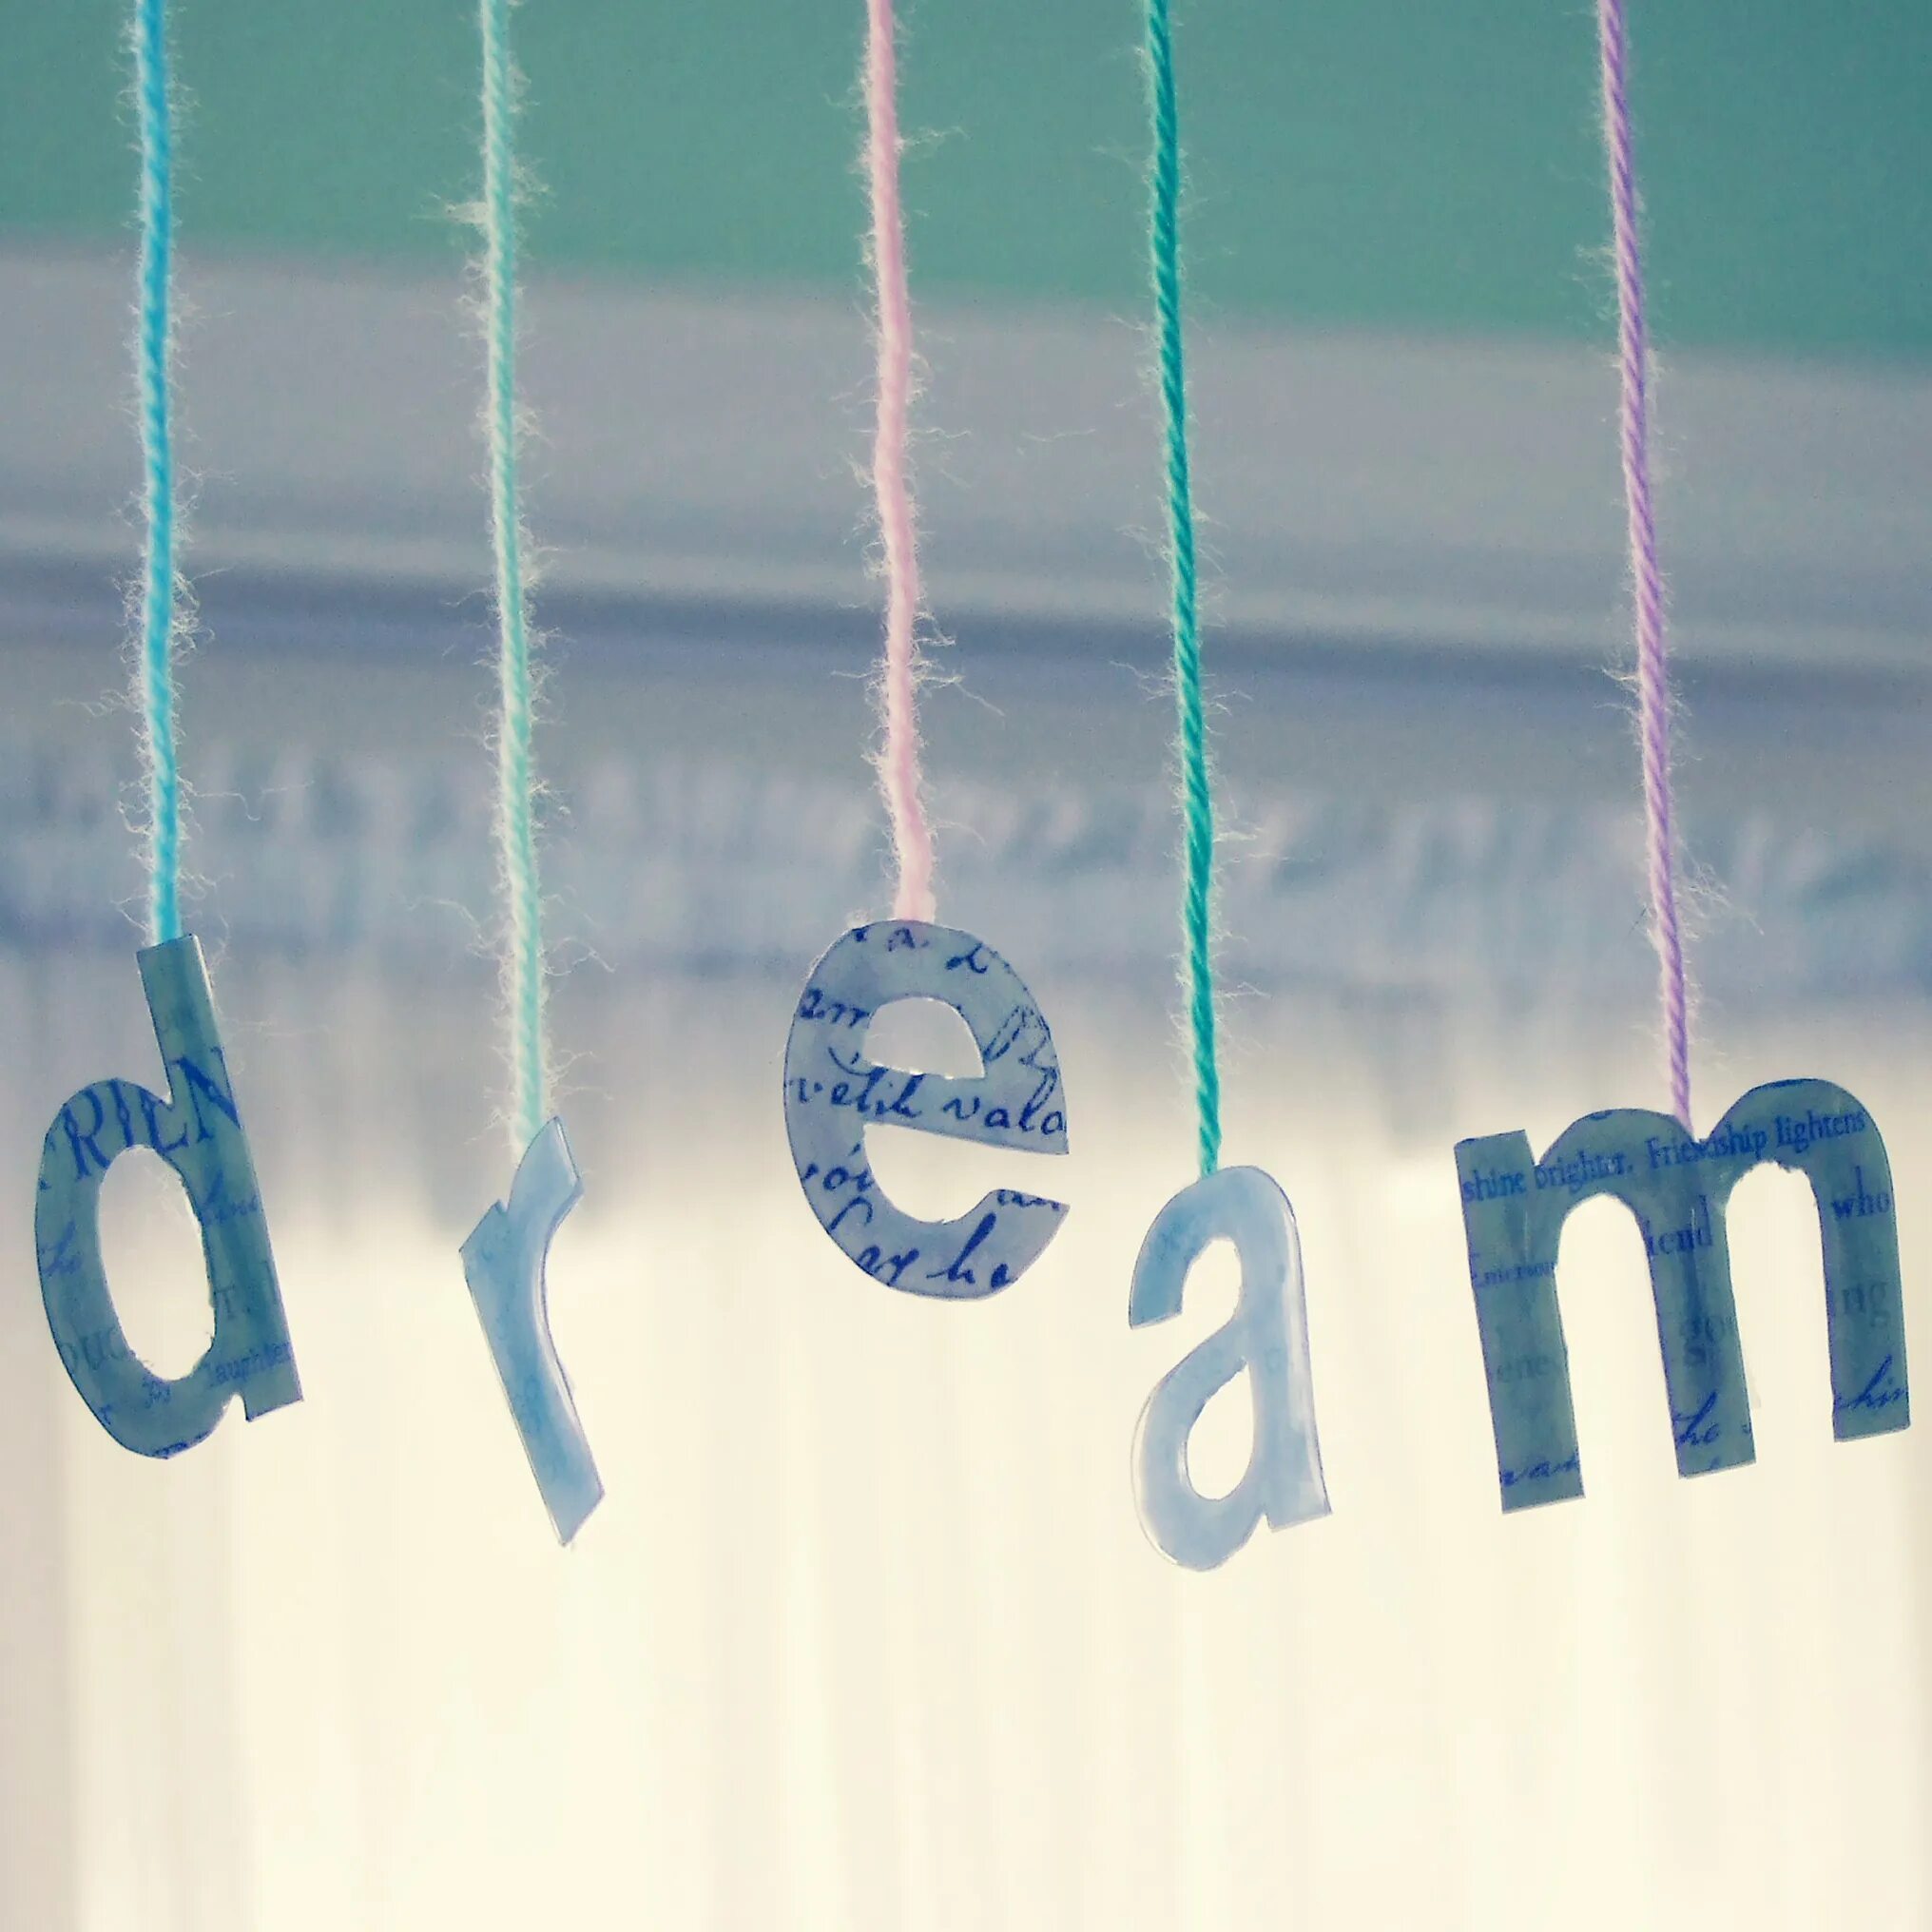 Мечта способна. Dream картинки. Мечта картинки. Картинки с надписью Dream. Dream мечта.